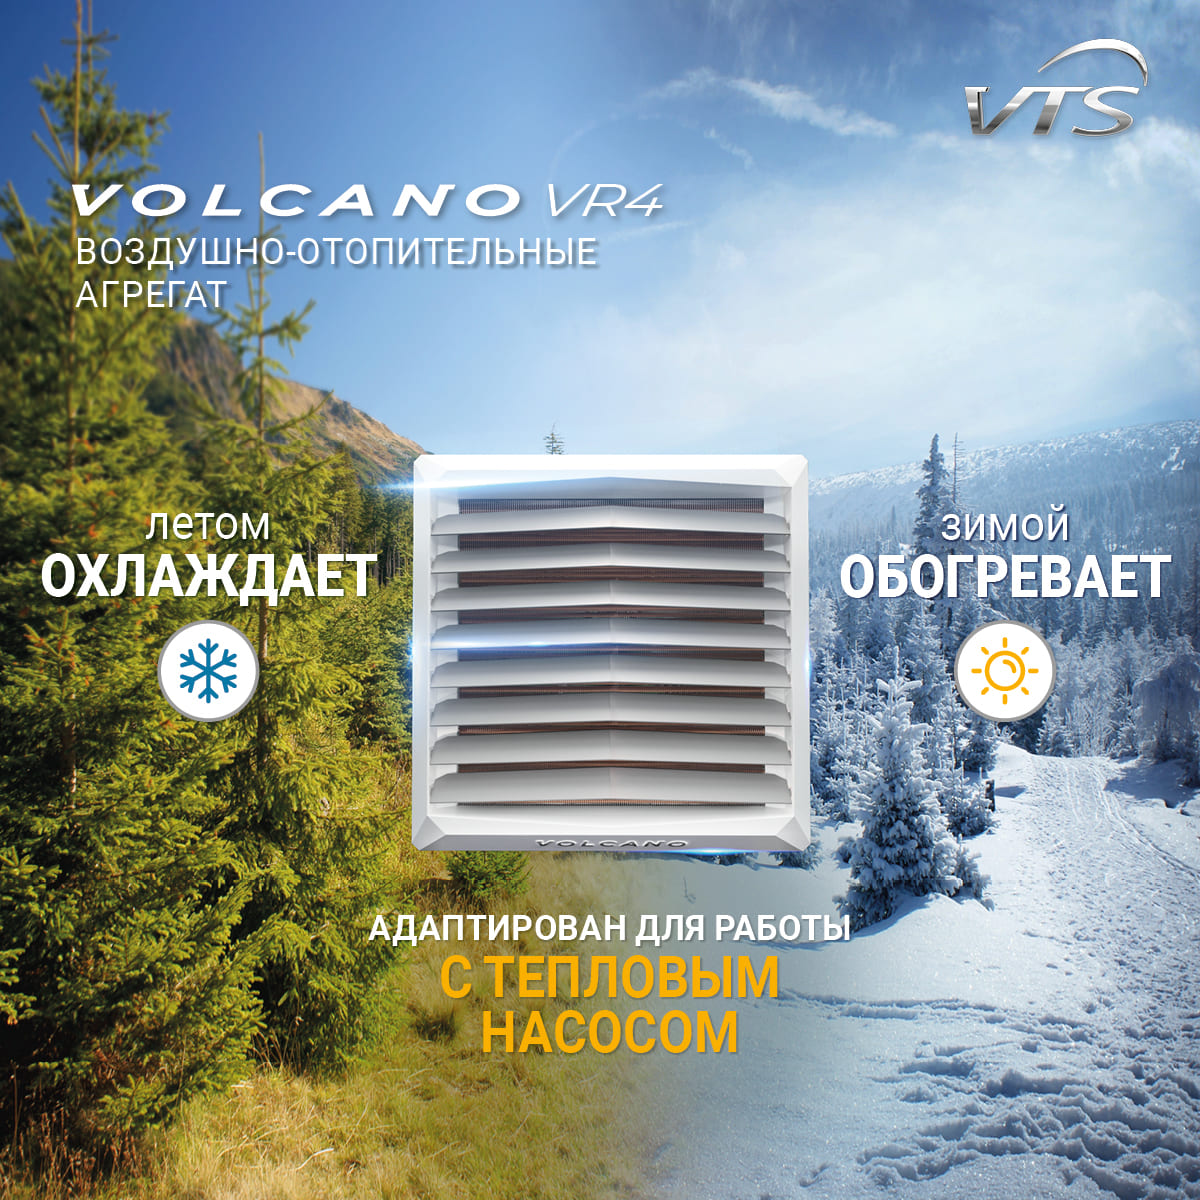 тепловентилятор водяной volcano vr4 ac (воздухонагреватель volcano vr4)